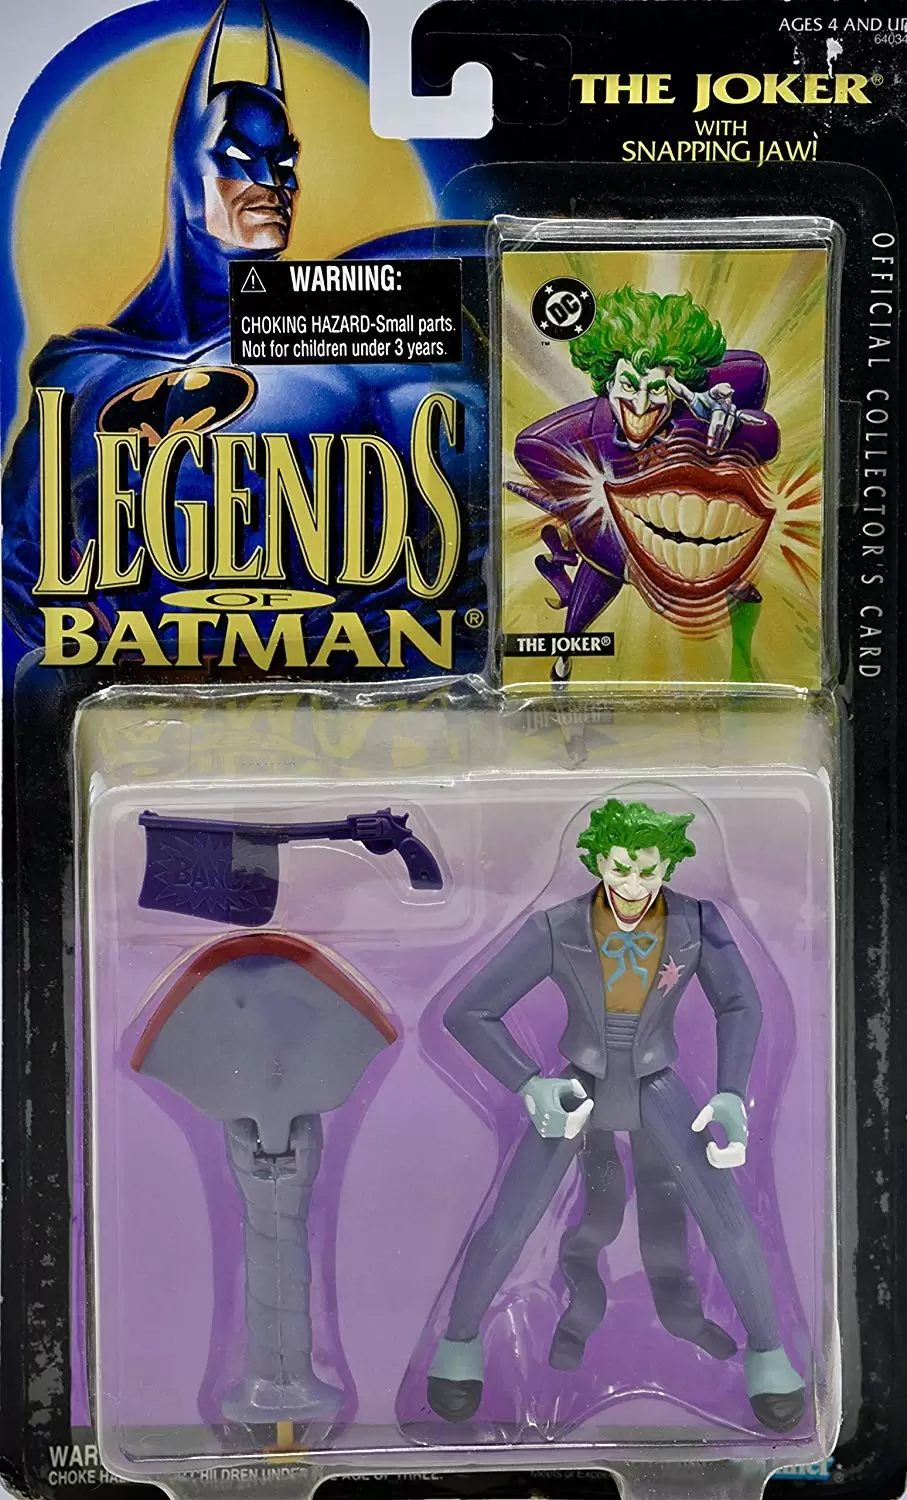 Legends of the Batman - The Joker